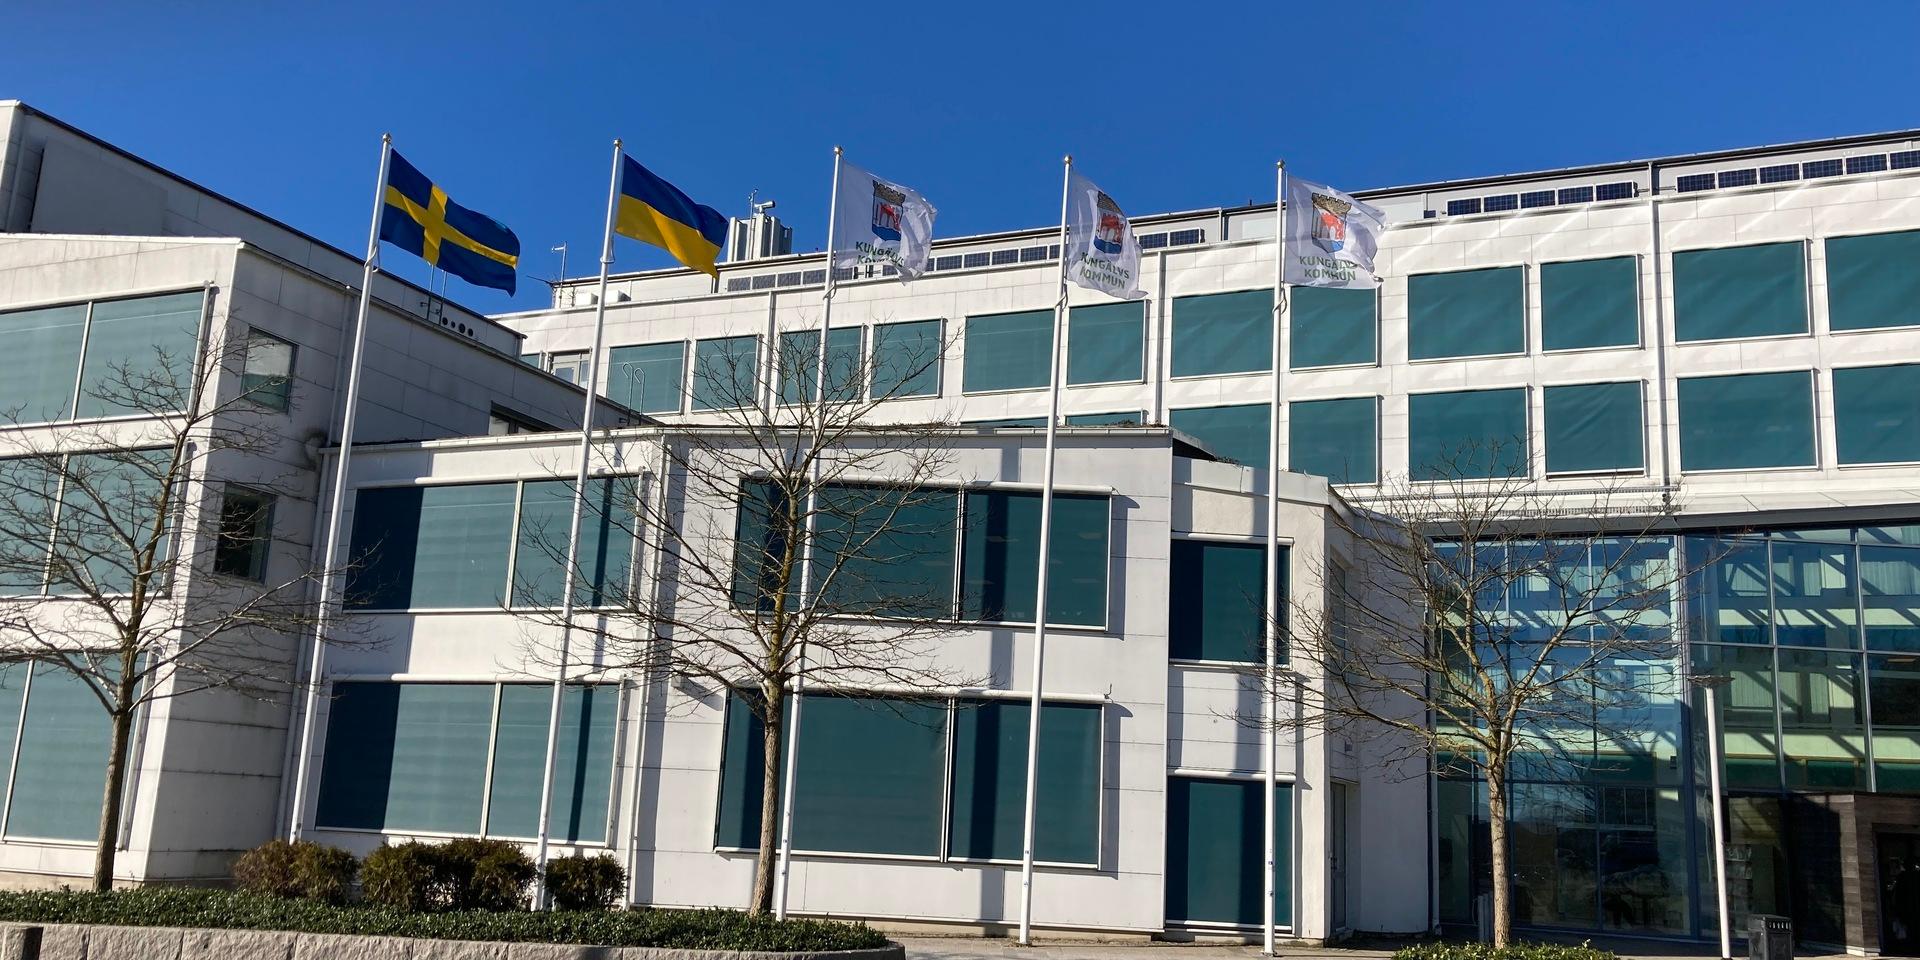 På måndagen hissades den ukrainska flaggan tillsammans med svenska flaggan utanför stadshuset.